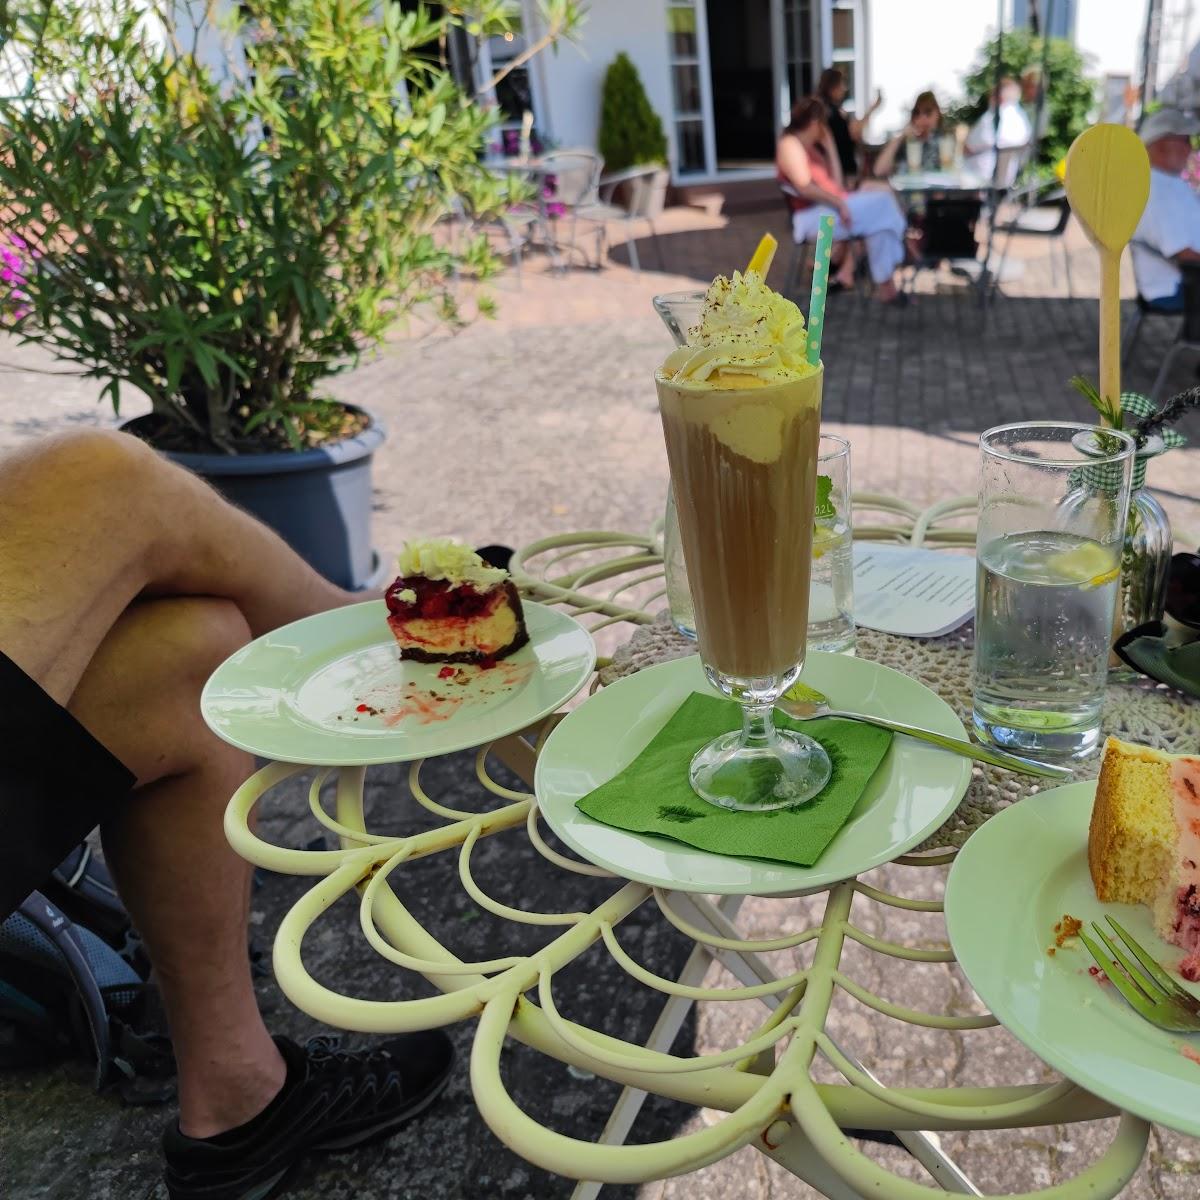 Restaurant "Scheunencafe Klatschmohn" in Esselbach